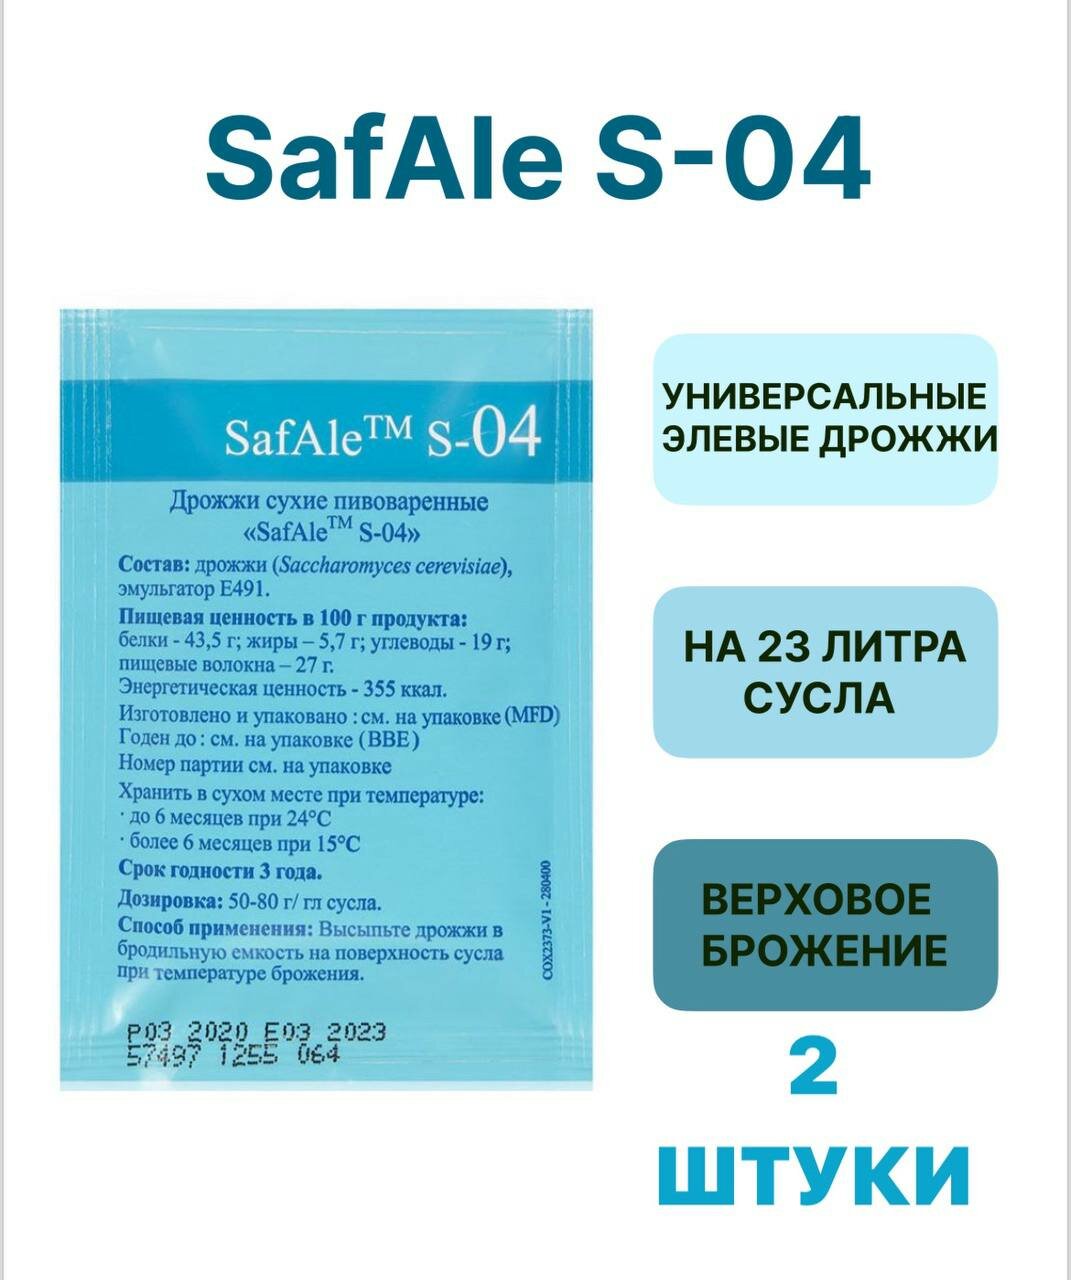 Дрожжи Safale S-04, 11,5 гр.2 шт